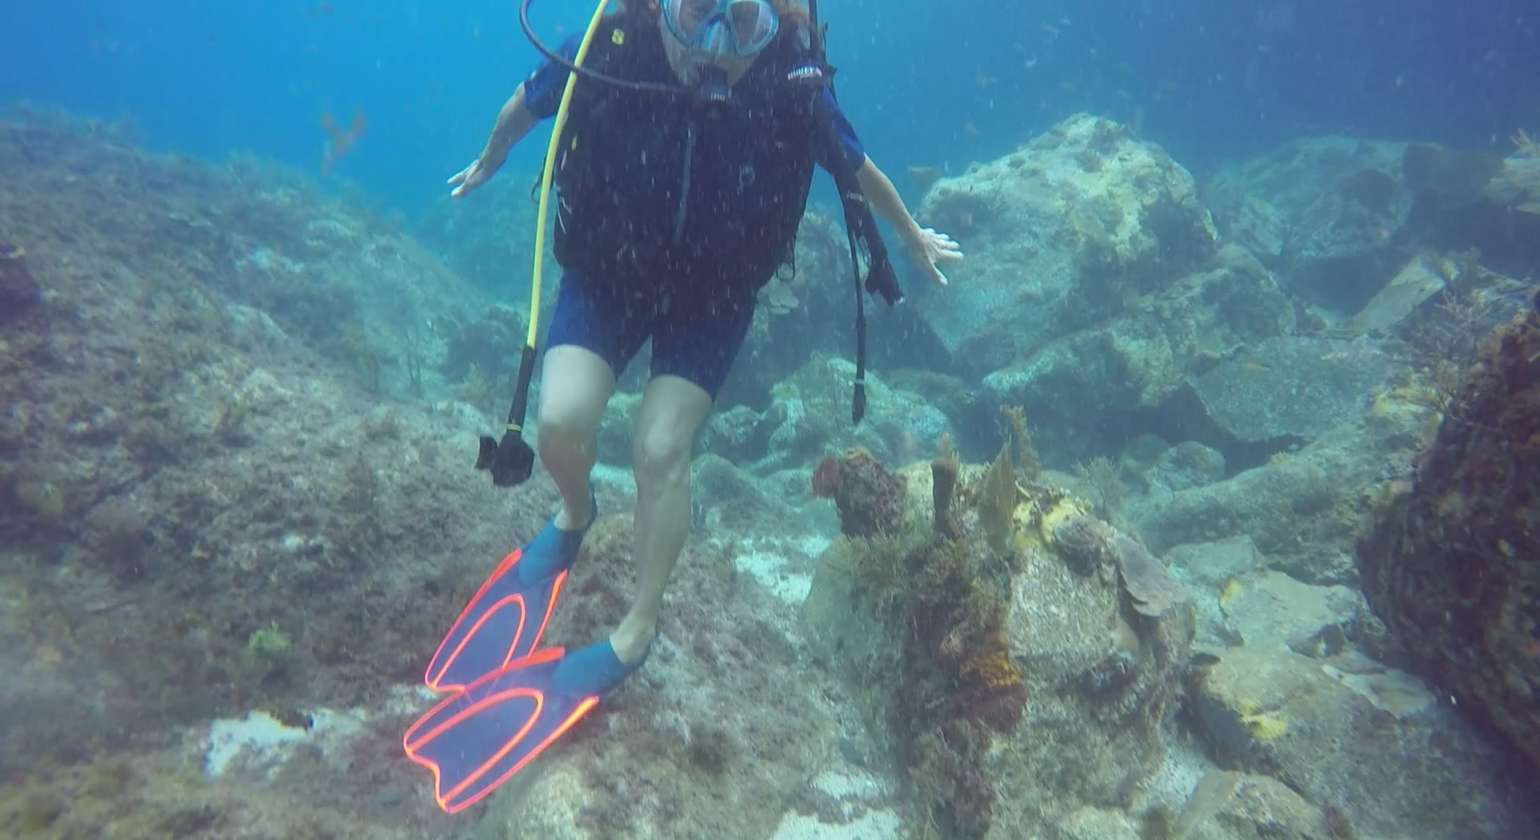 Regarder Cette tortue paisible sait que les plongeurs la respectent ! A Sainte Lucie et aux Grenadines où les gens mangent cet animal, les tortues se sauvent dès qu’on approche à moins d’une dizaine de mètres…